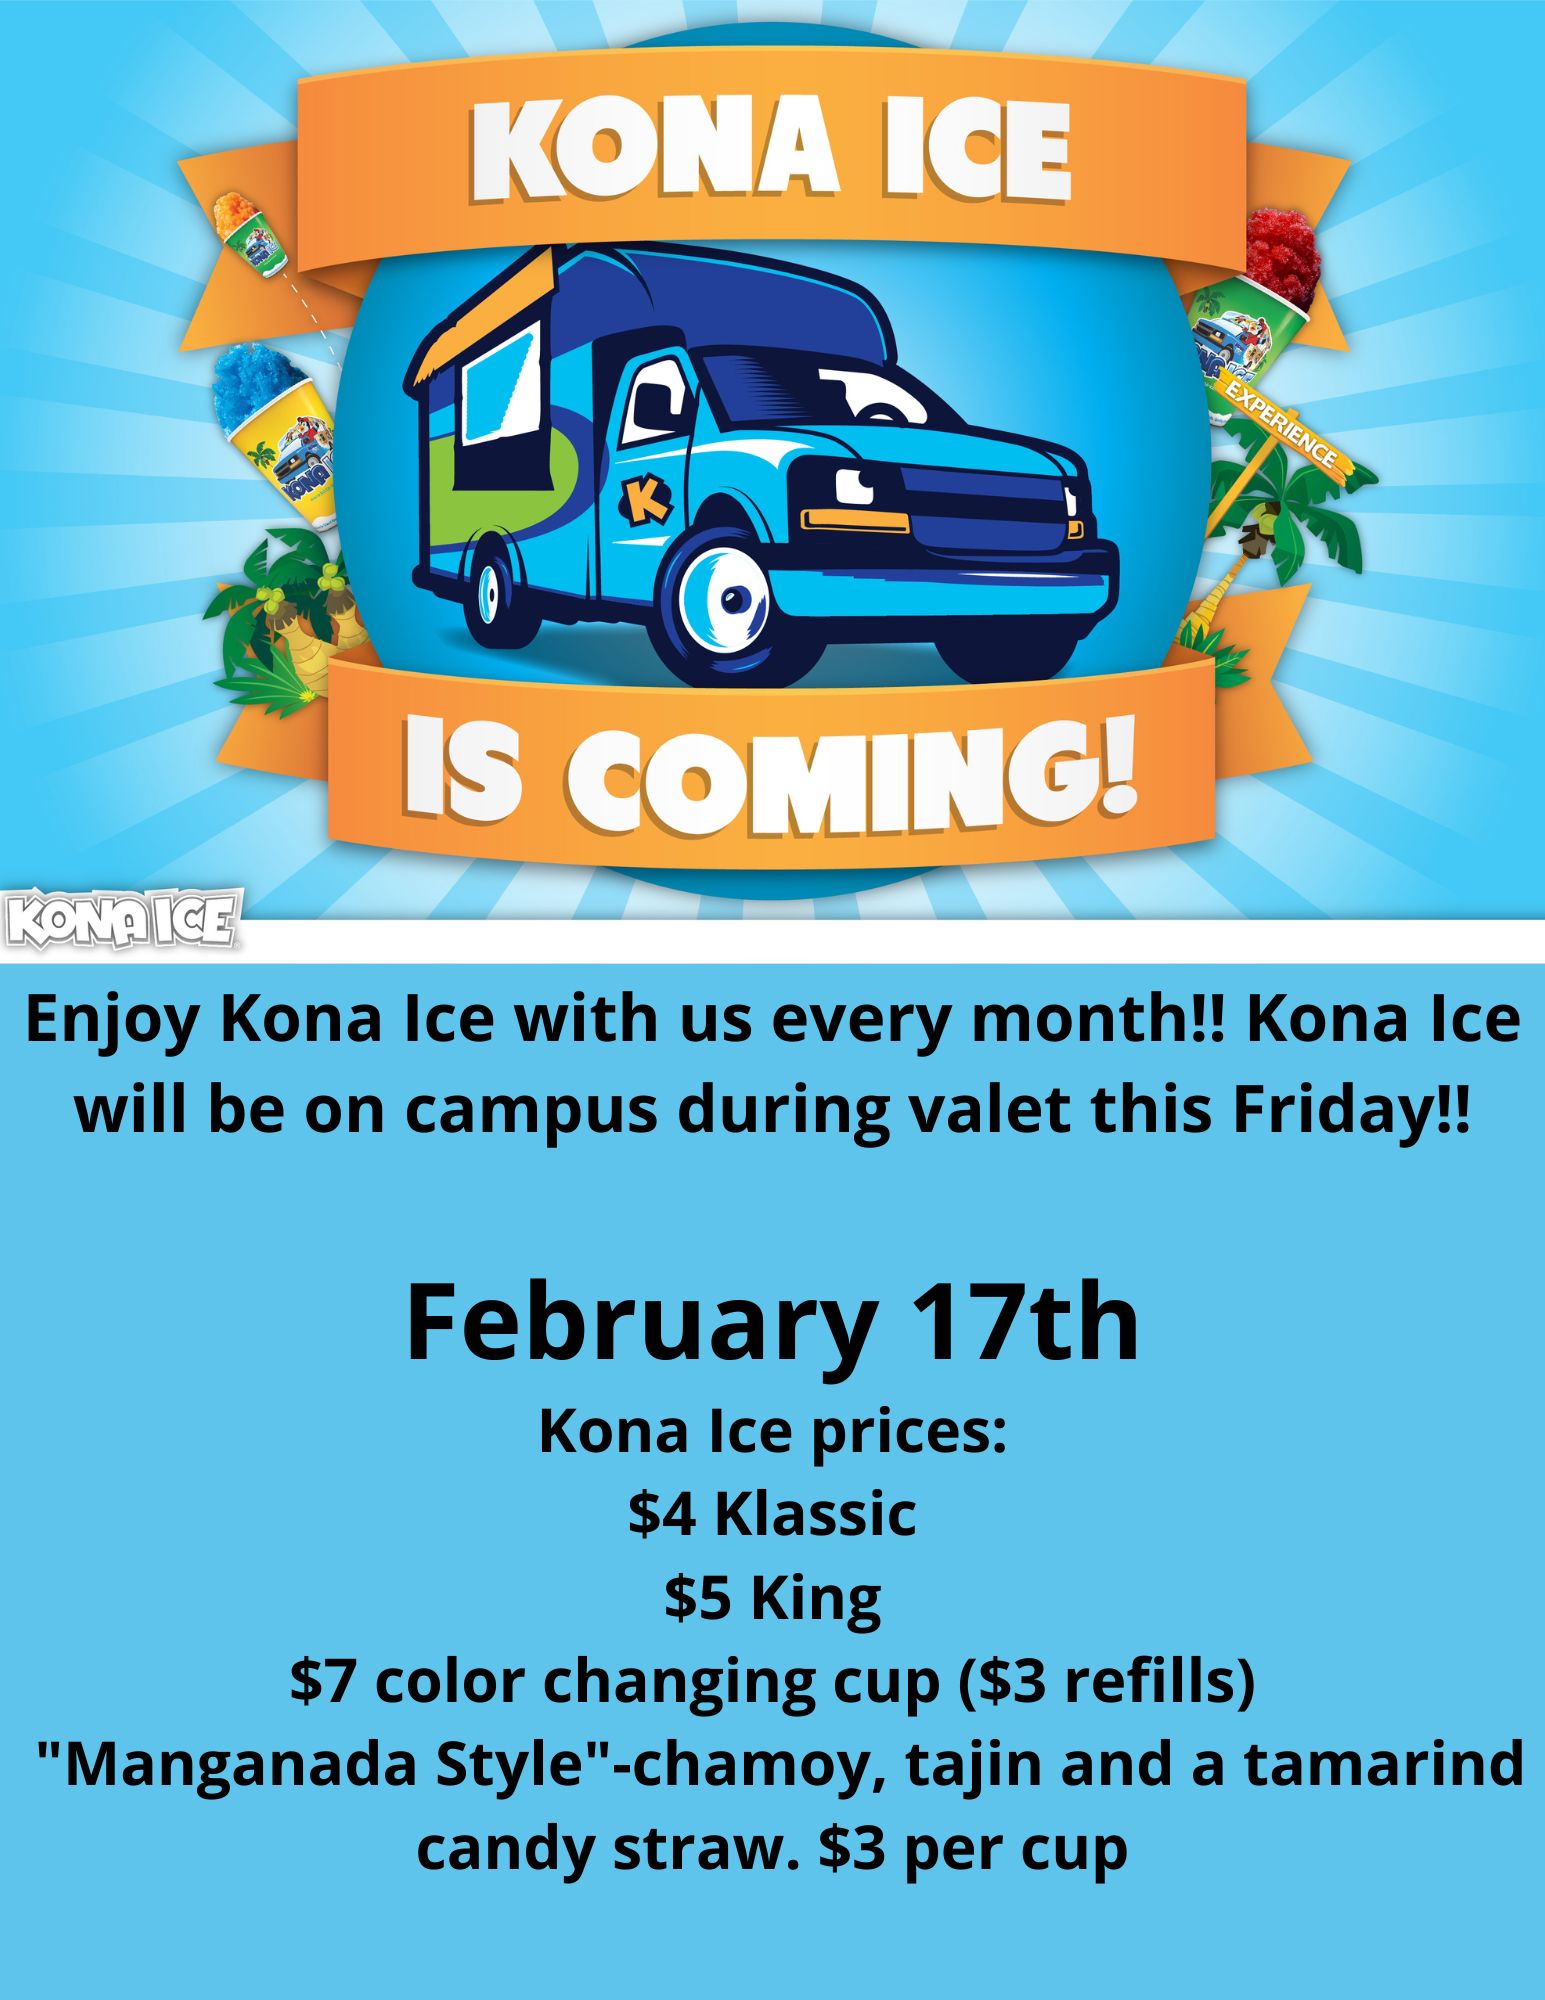 Kona Ice February 17 iLEAD Lancaster